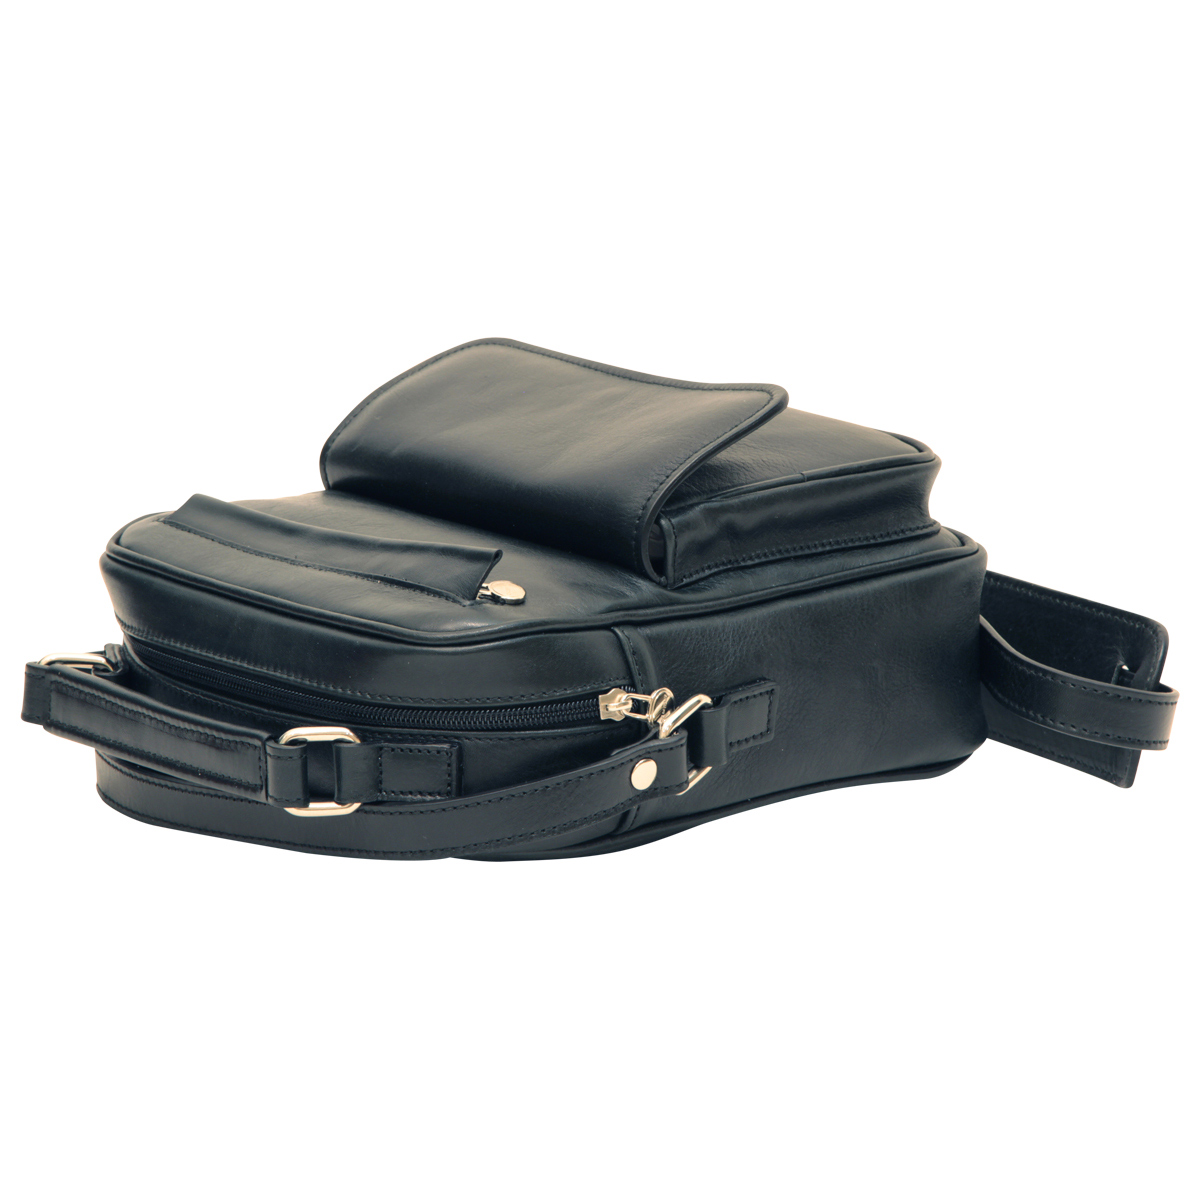 Leather Shoulder Bag with front pocket - Black | 056489NE | EURO | Old Angler Firenze